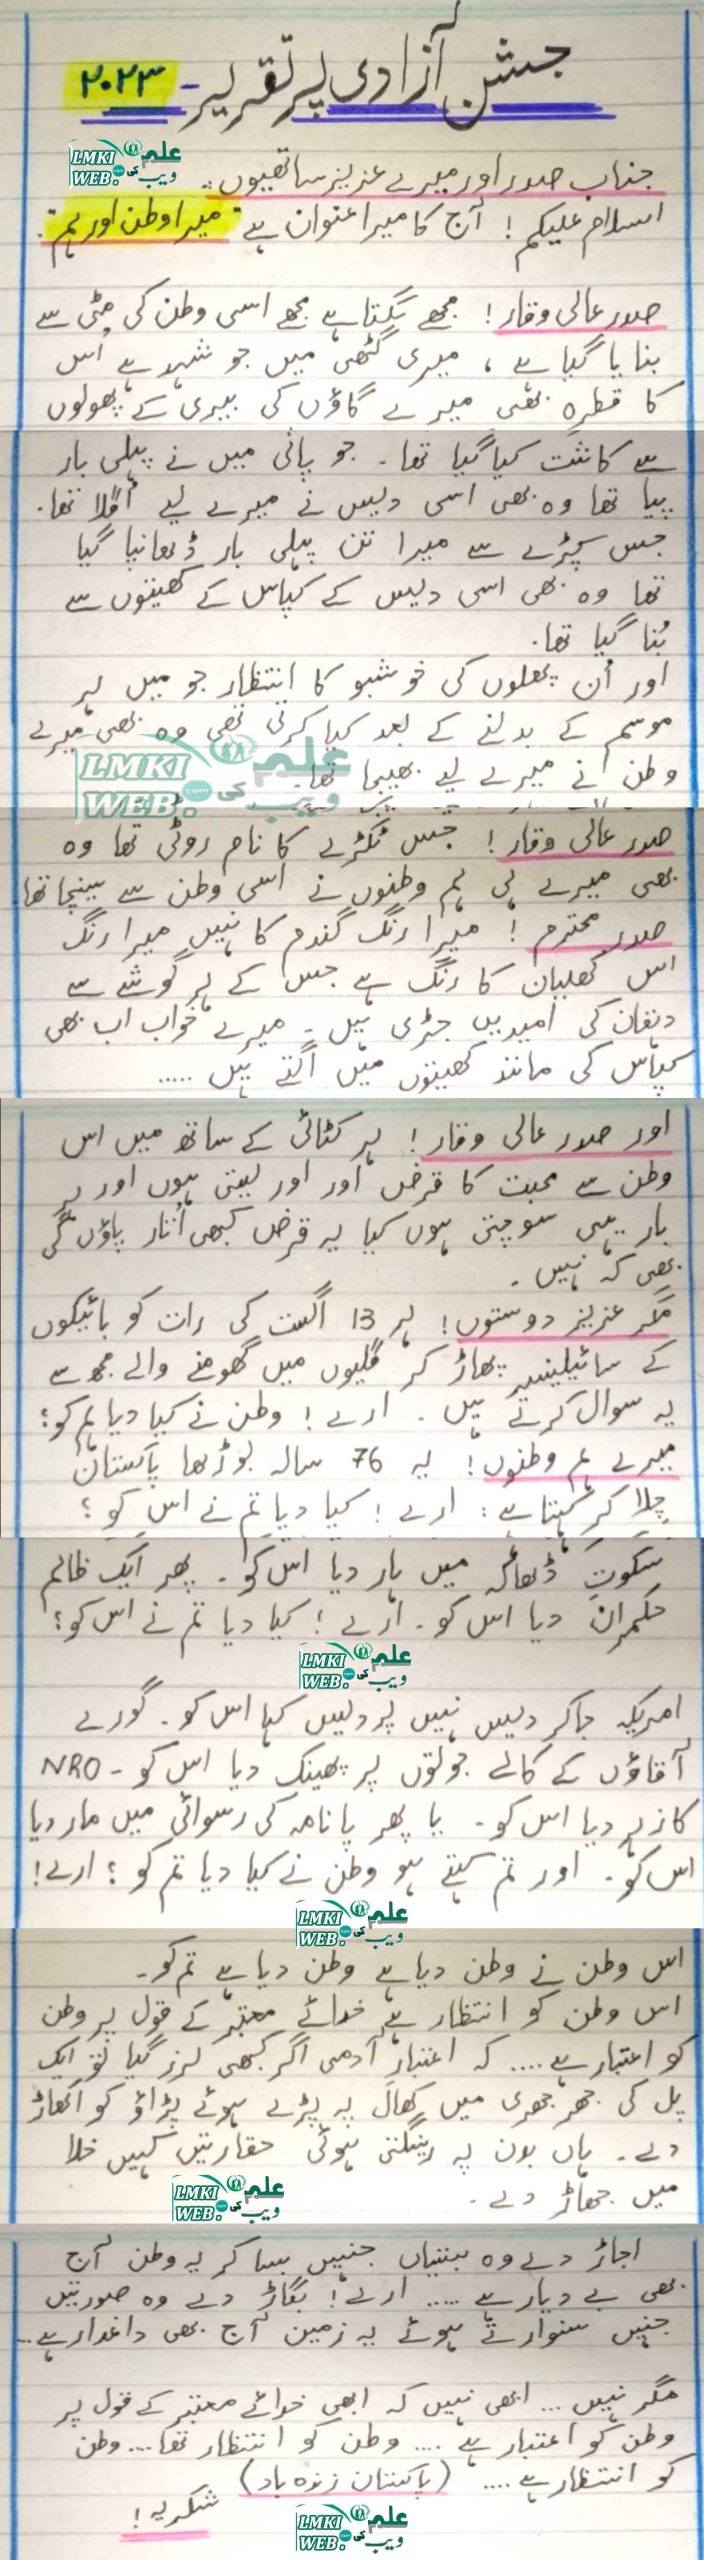 written speech on 14 august in urdu